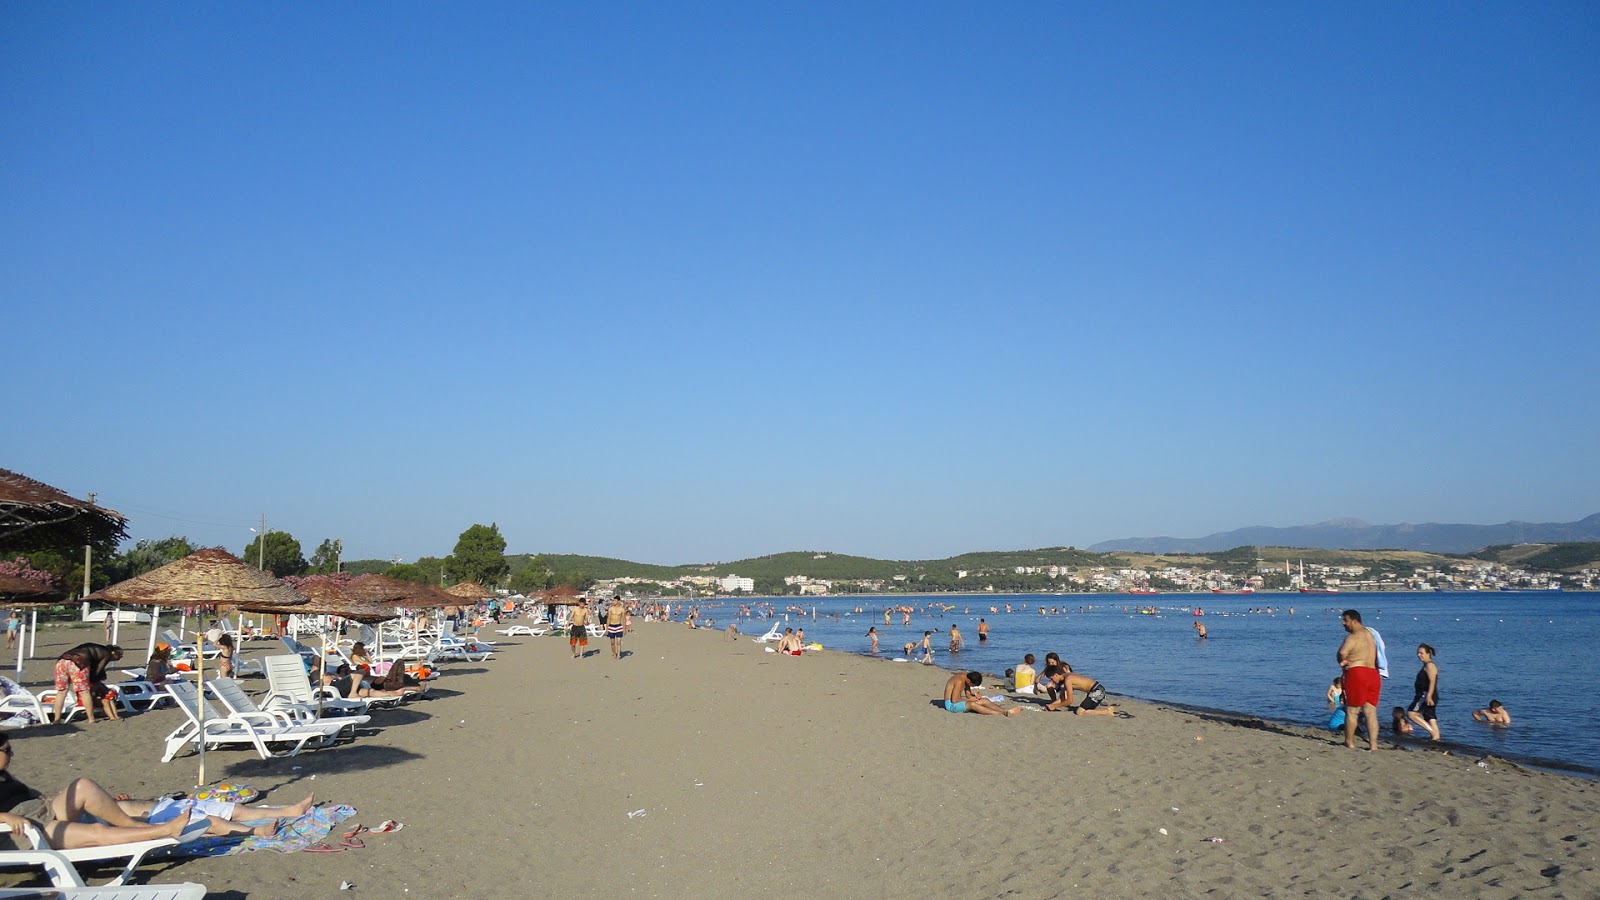 Zdjęcie Aliaga beach z powierzchnią jasny piasek